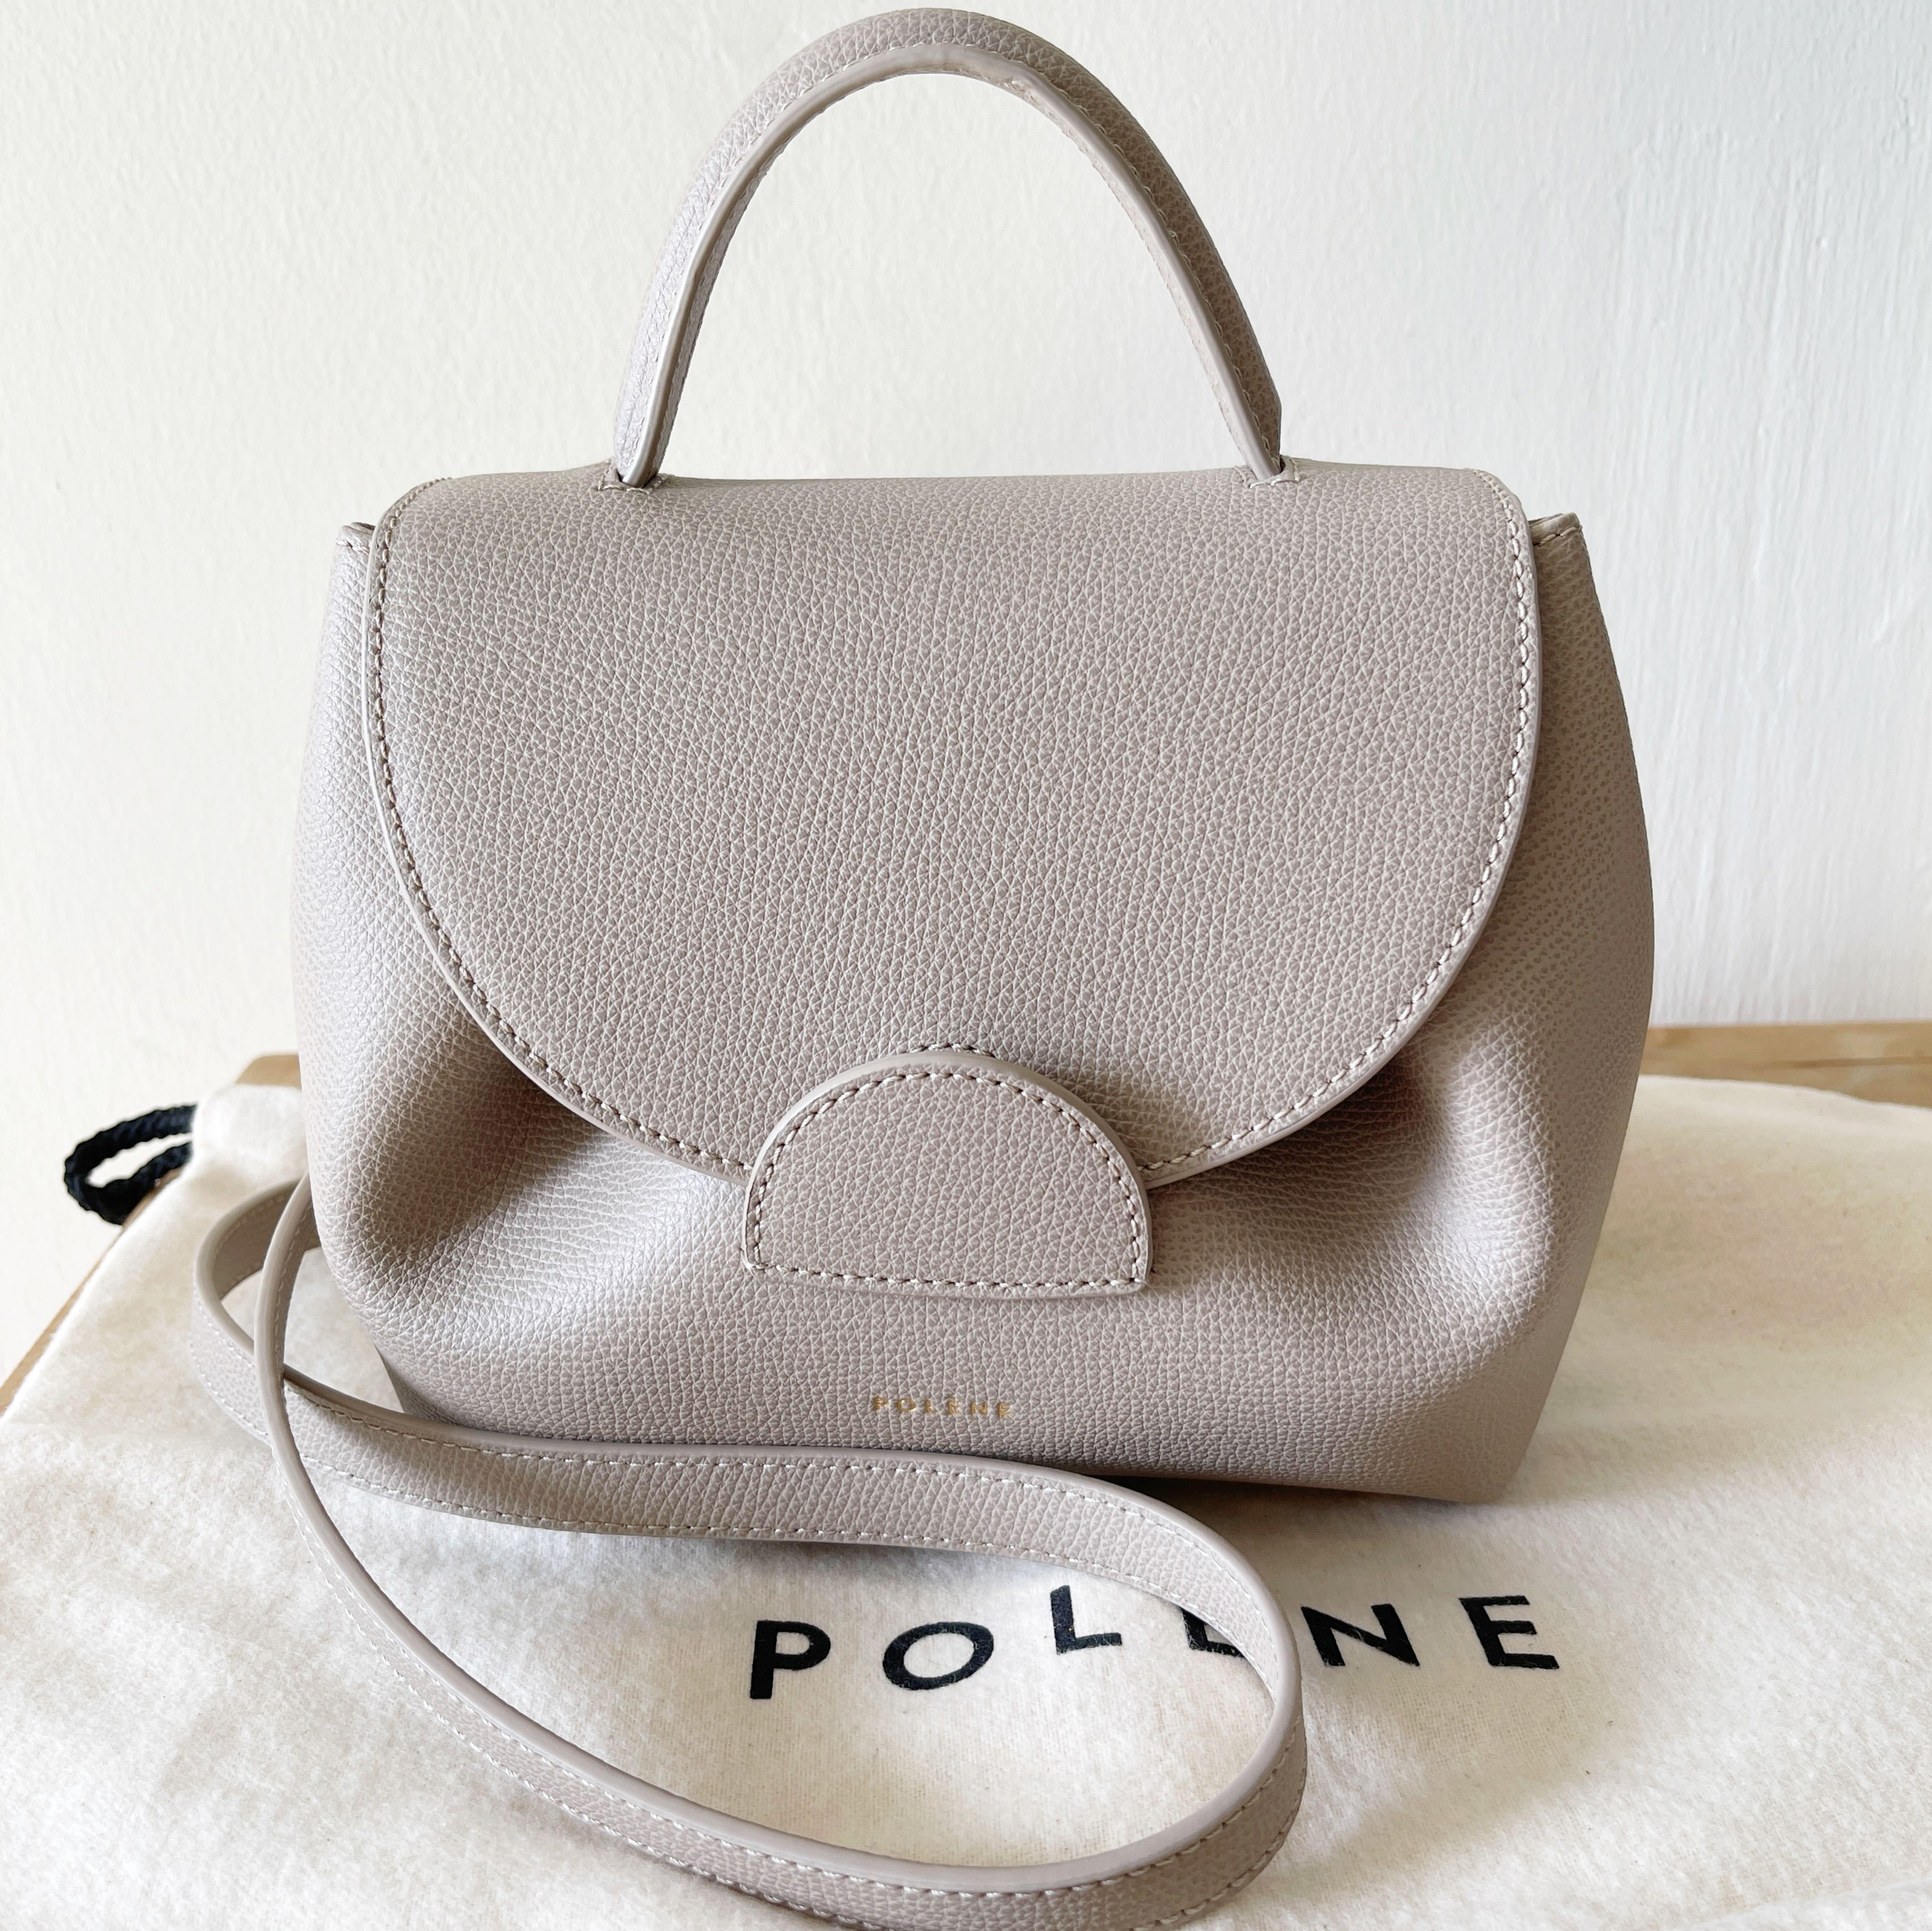 Polène Numero Uno Nano in taupe textured leather — Php24,500 Check